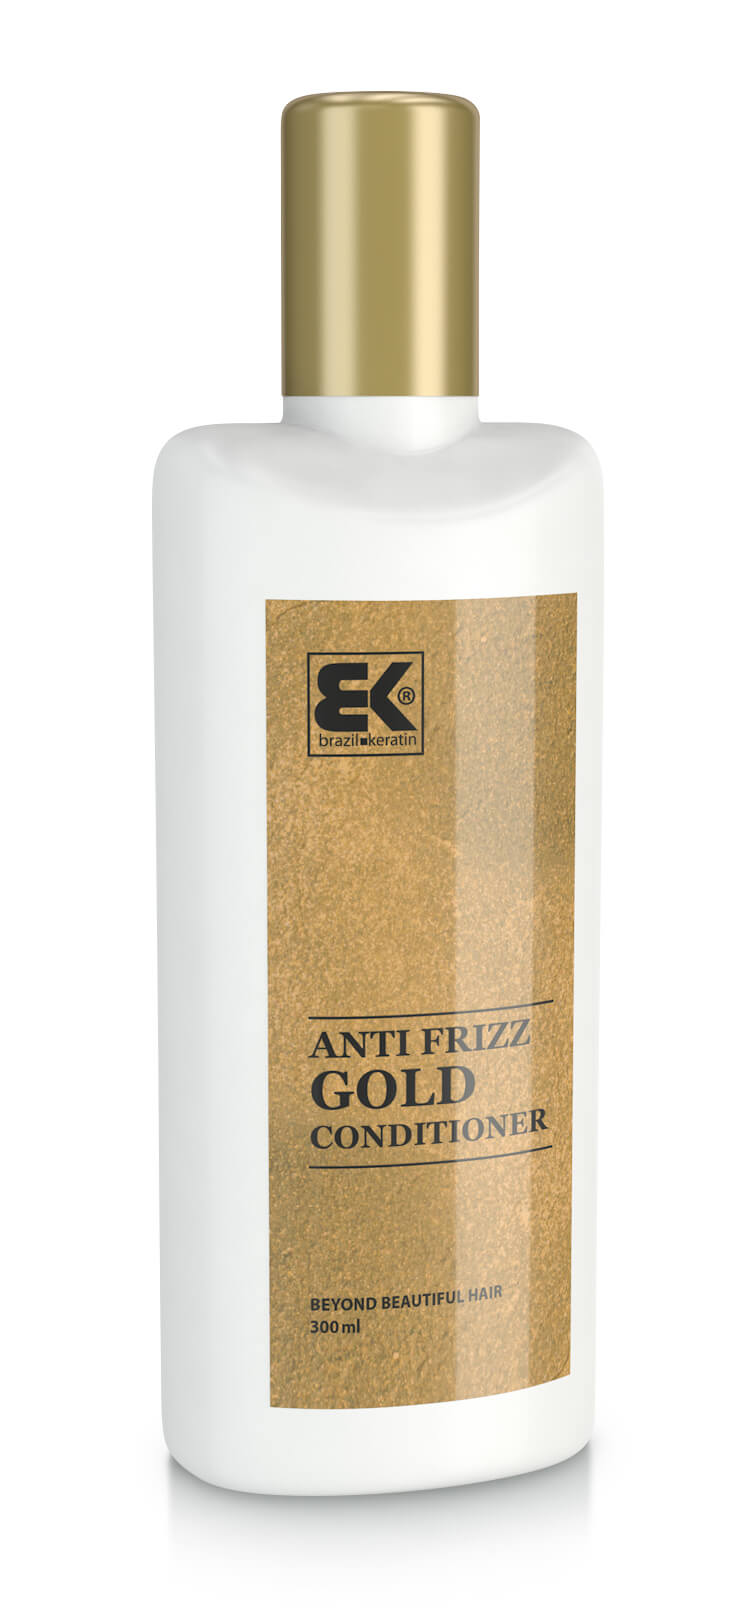 Brazil Keratin Zlatý kondicionér pre poškodené vlasy (Conditioner Anti-Frizz Gold) 300 ml + 2 mesiace na vrátenie tovaru